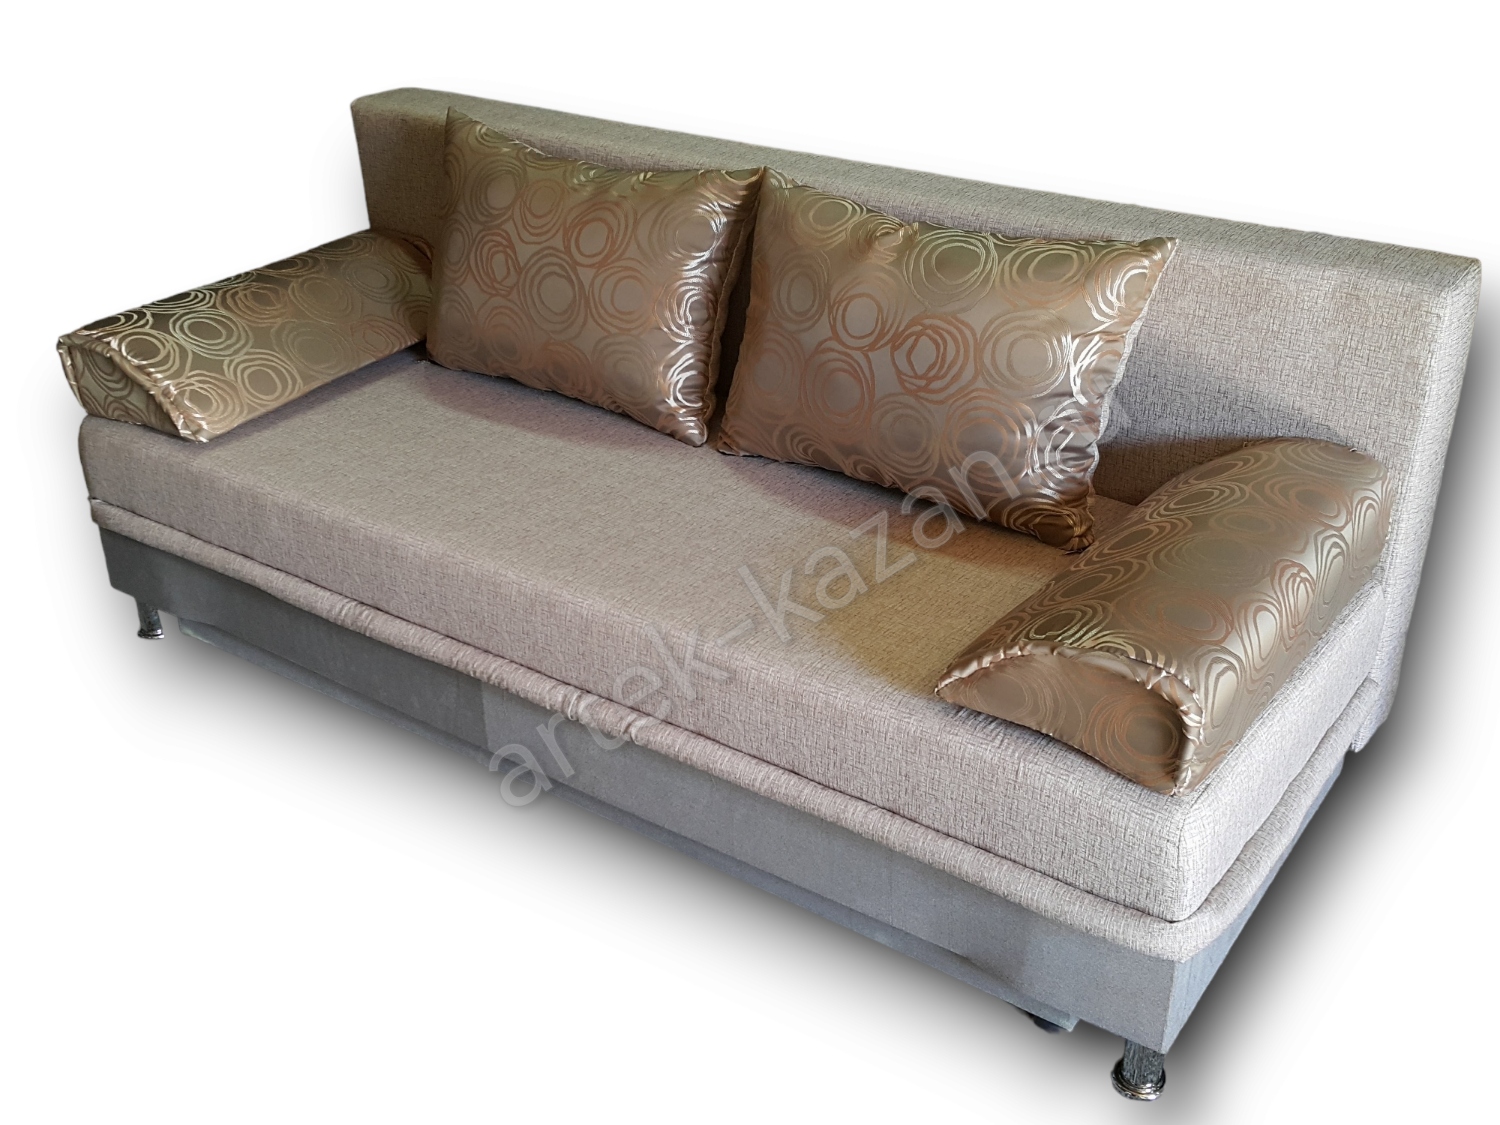 диван еврокнижка Эконом фото № 83. Купить недорогой диван по низкой цене от производителя можно у нас.